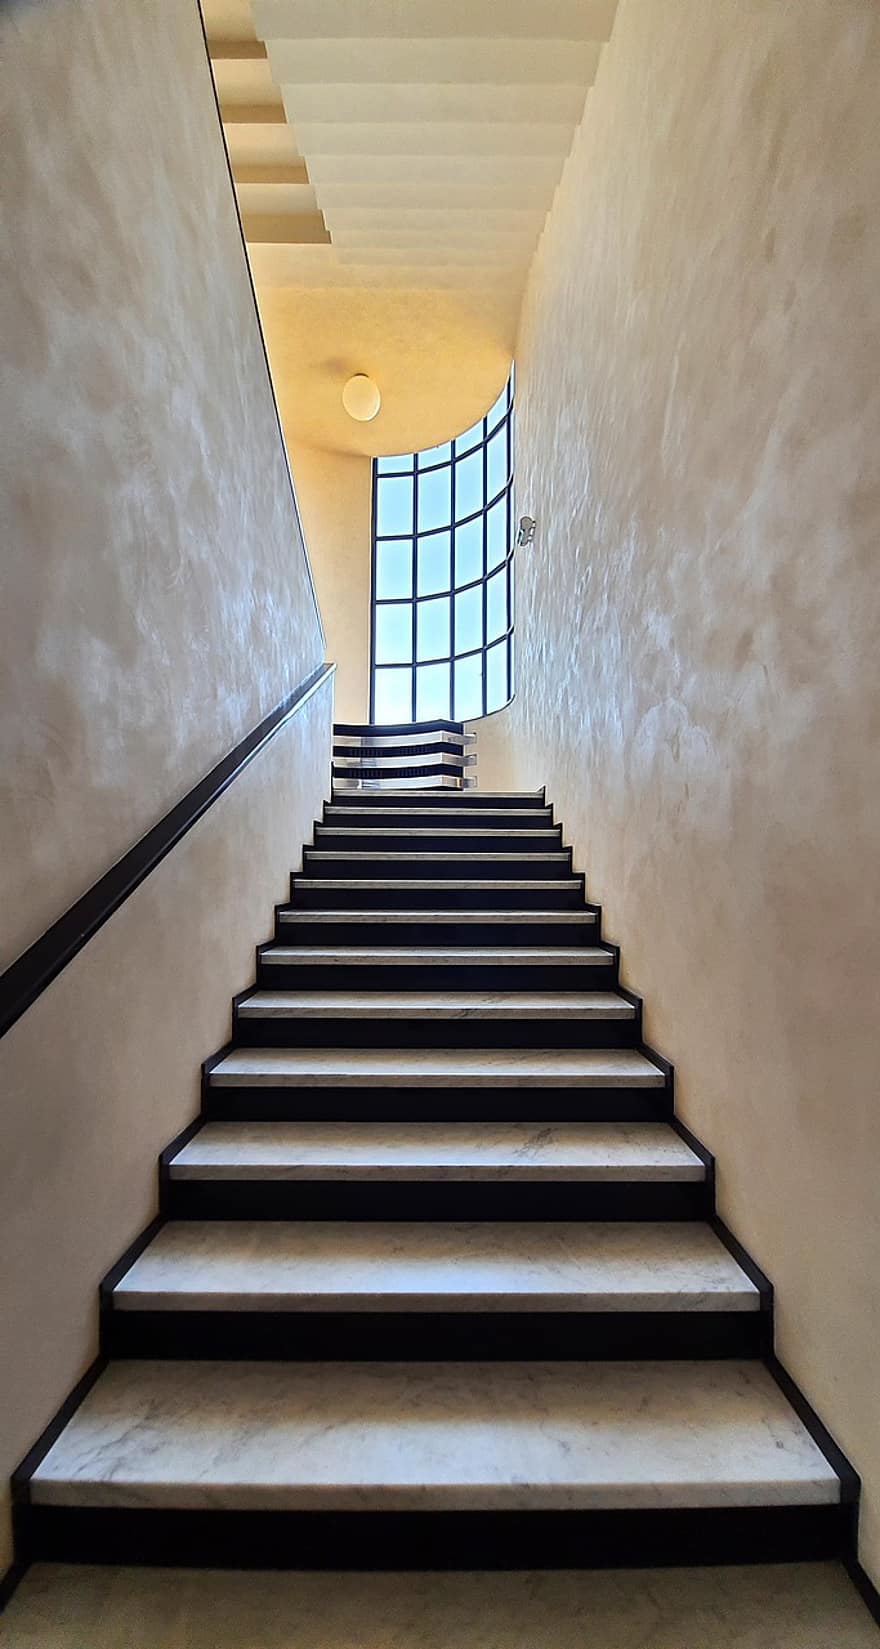 Villa Cavrois, Frankrike, interiørdesign, arkitektur, Herregård, Modernistisk herskapshus, moderne arkitektur, trapp, innendørs, gulv, trinn